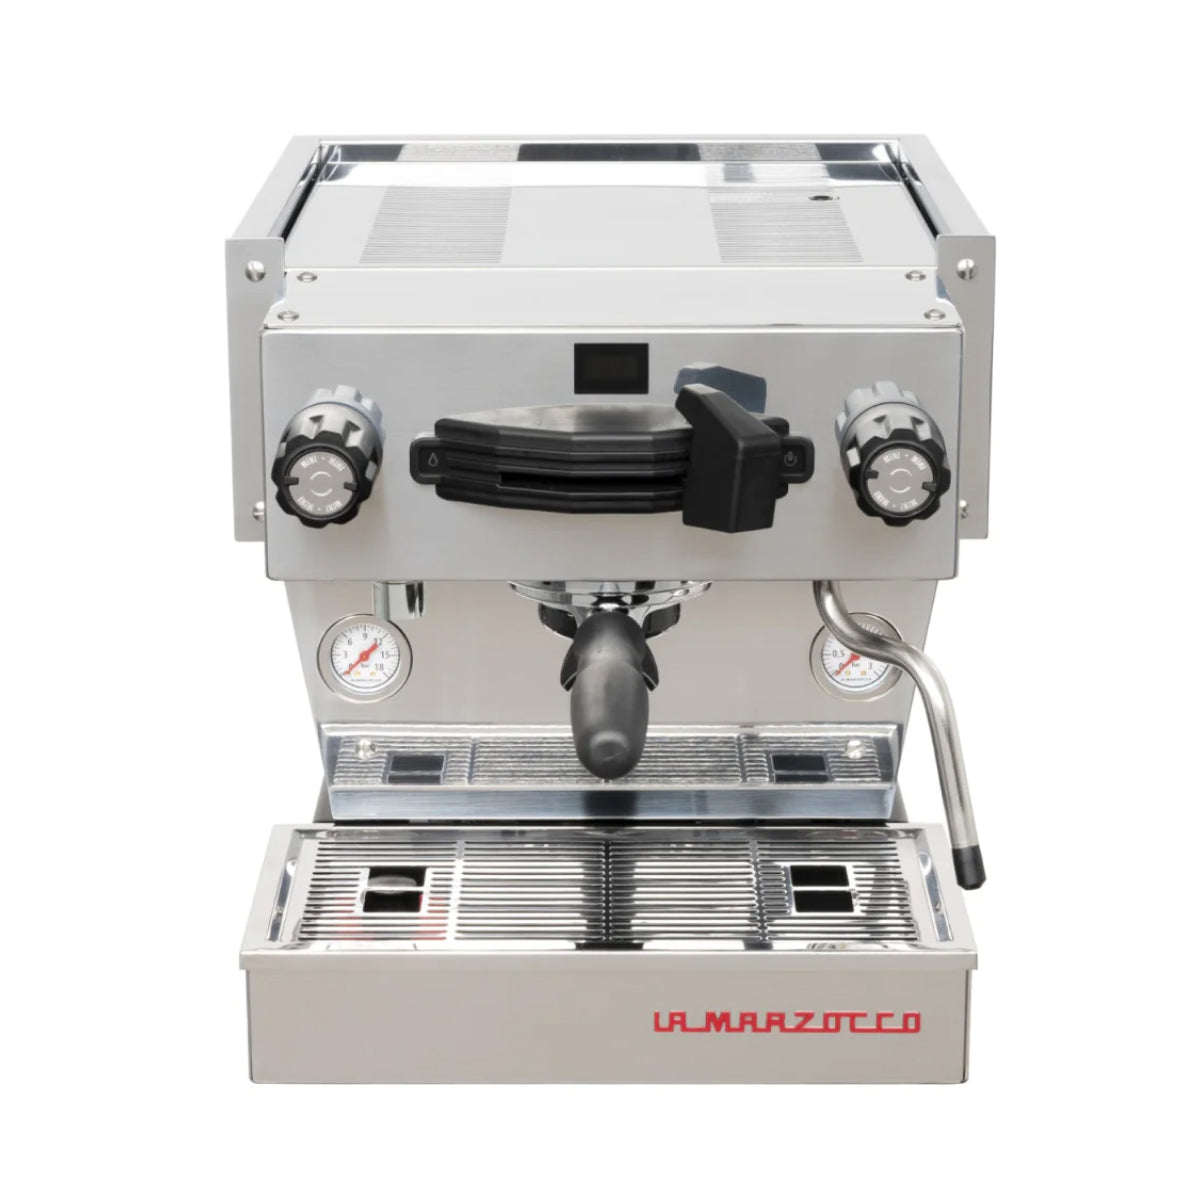 Rocket Espresso Mozzafiato Timer Evoluzione R Espresso Machine - front facing